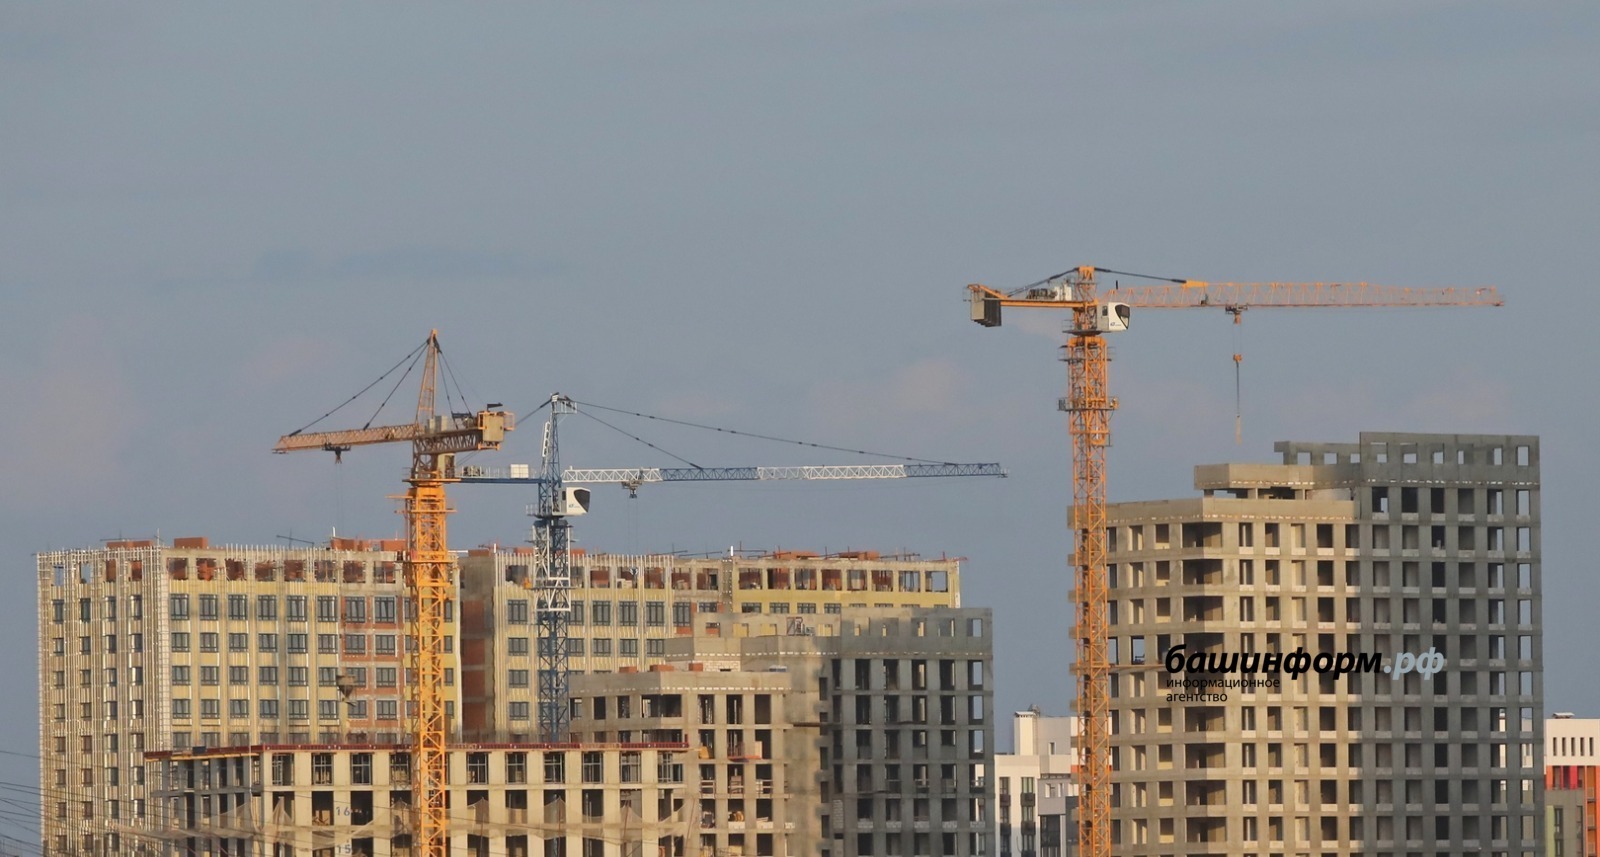 Инфраструктурные проекты в Башкирии позволят построить 8 млн «квадратов» жилья - Назаров